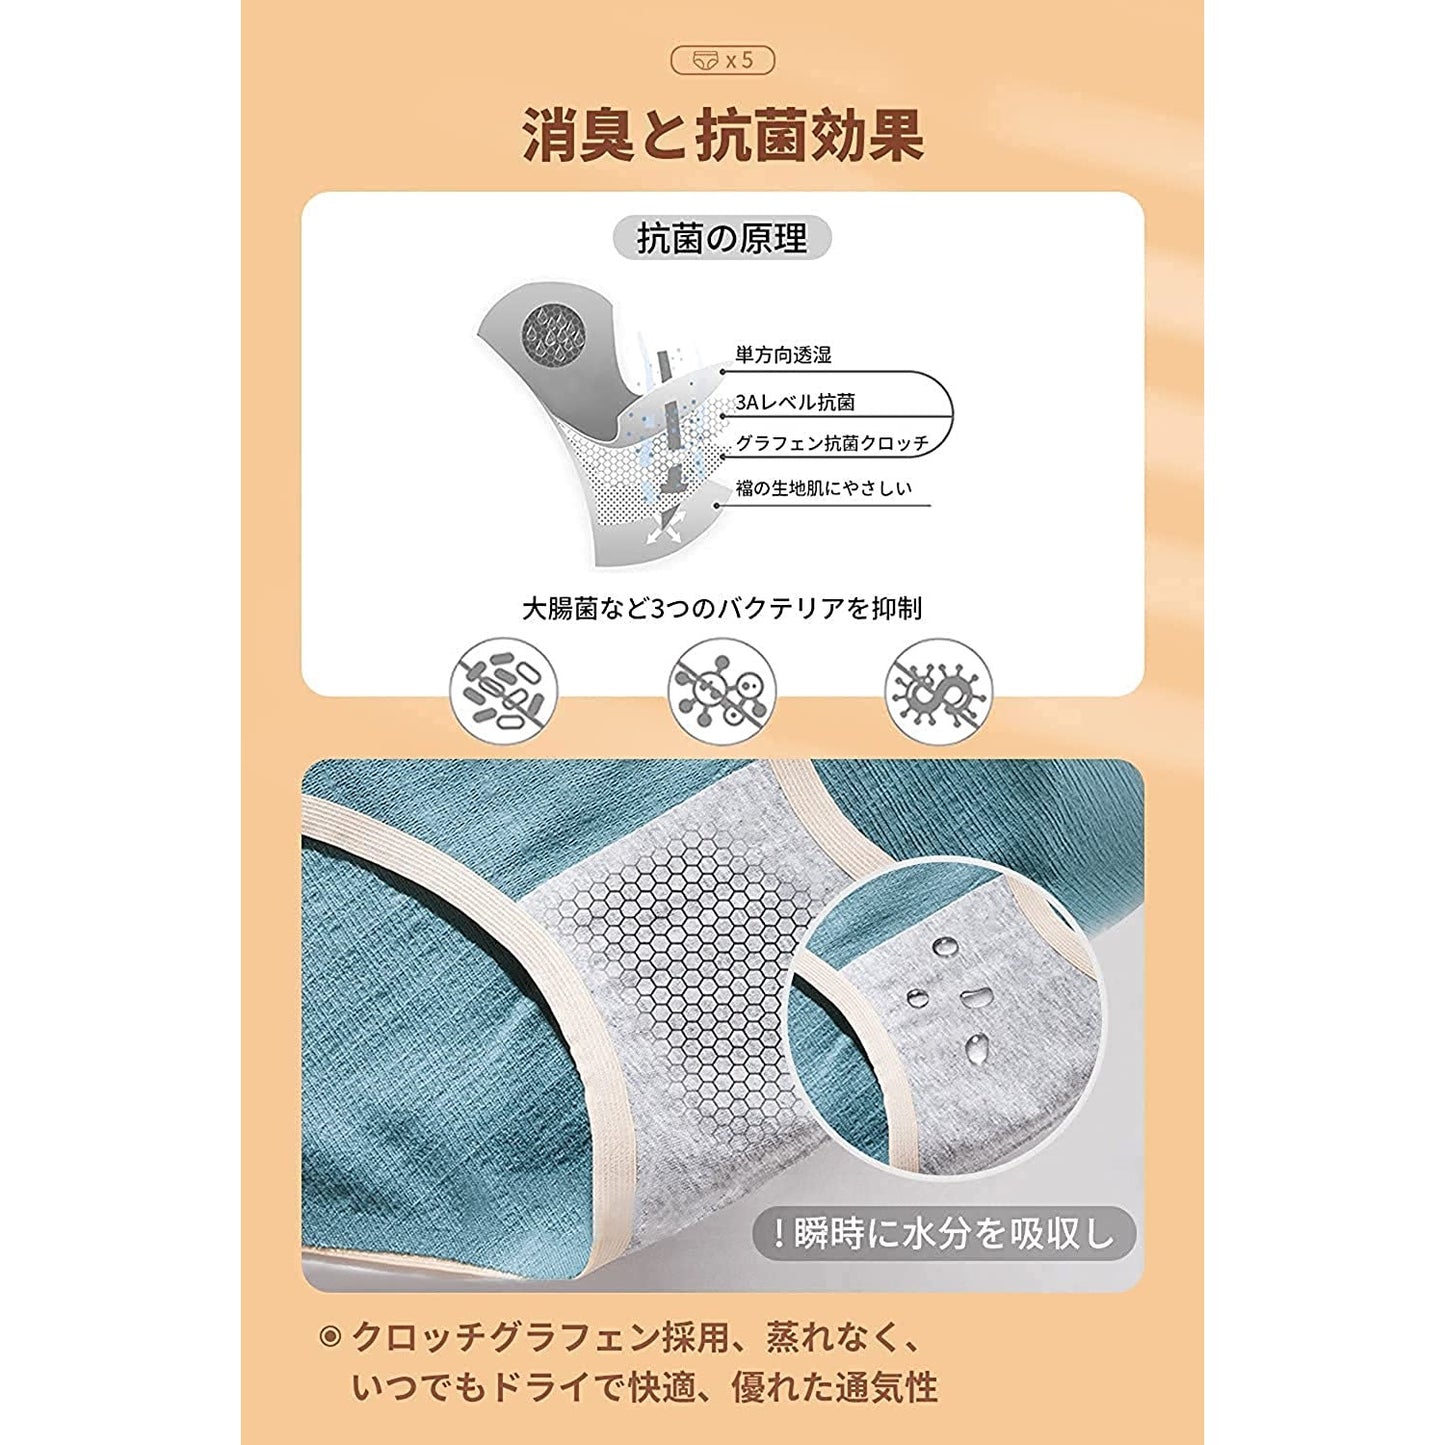 Buy Women's Pure Cotton Panties Set of 5 Online | JAPAN PLAZA UK